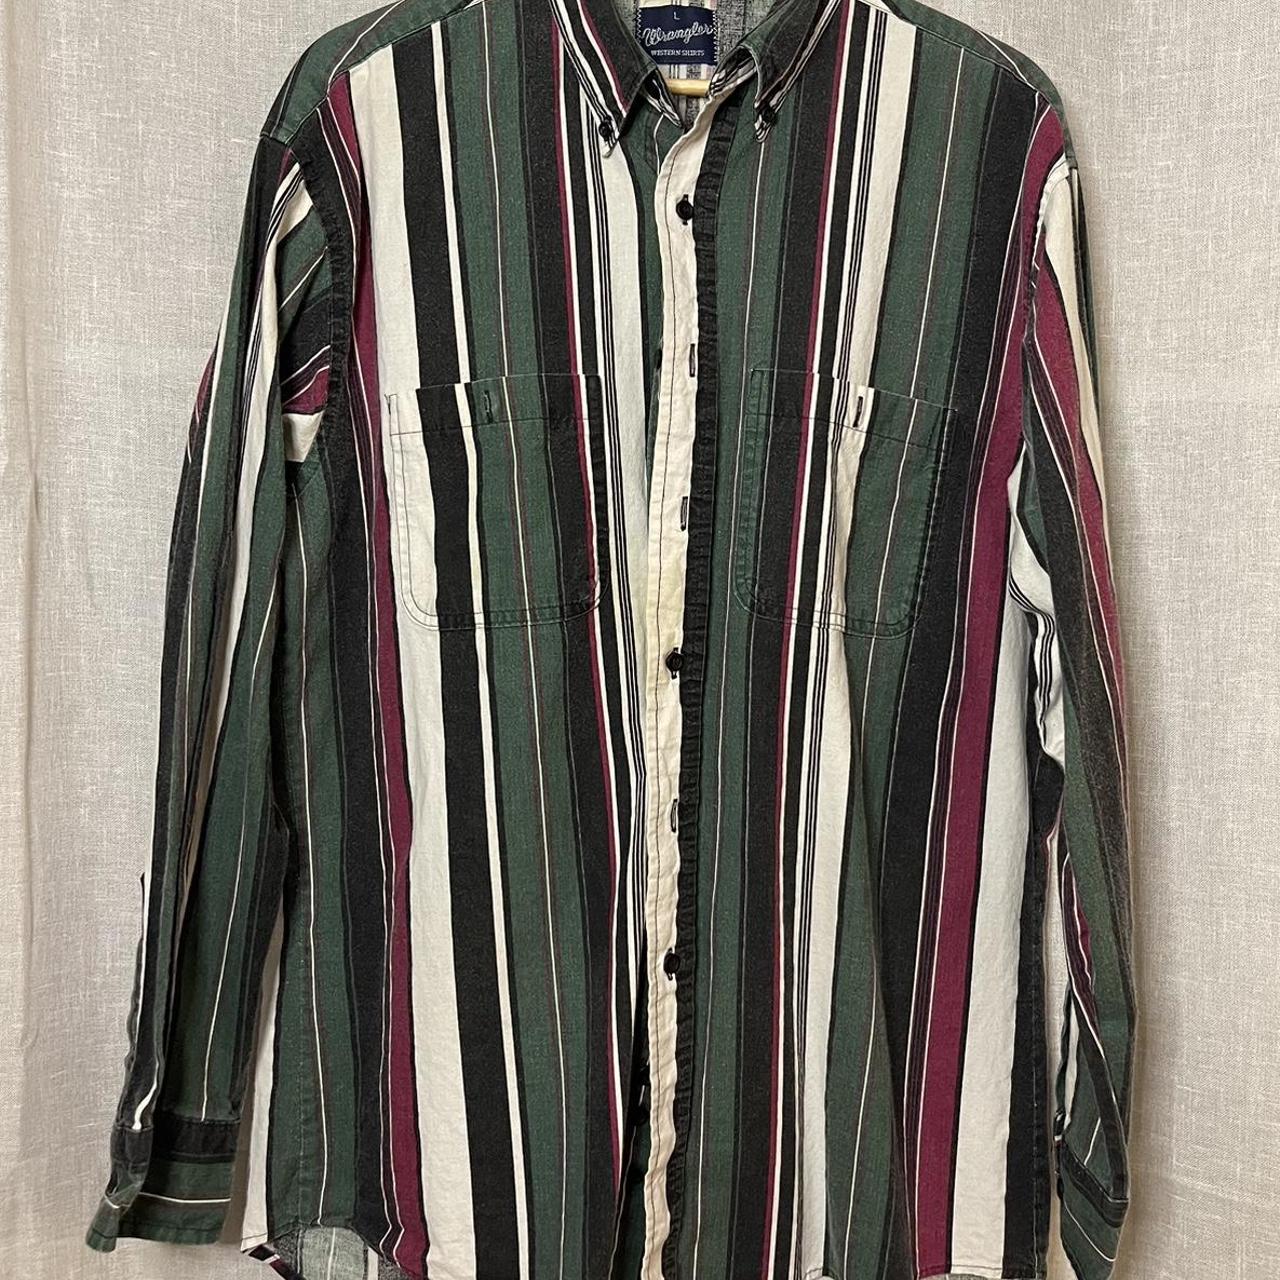 Vintage Wrangler Western Button-down Large Shirt -... - Depop